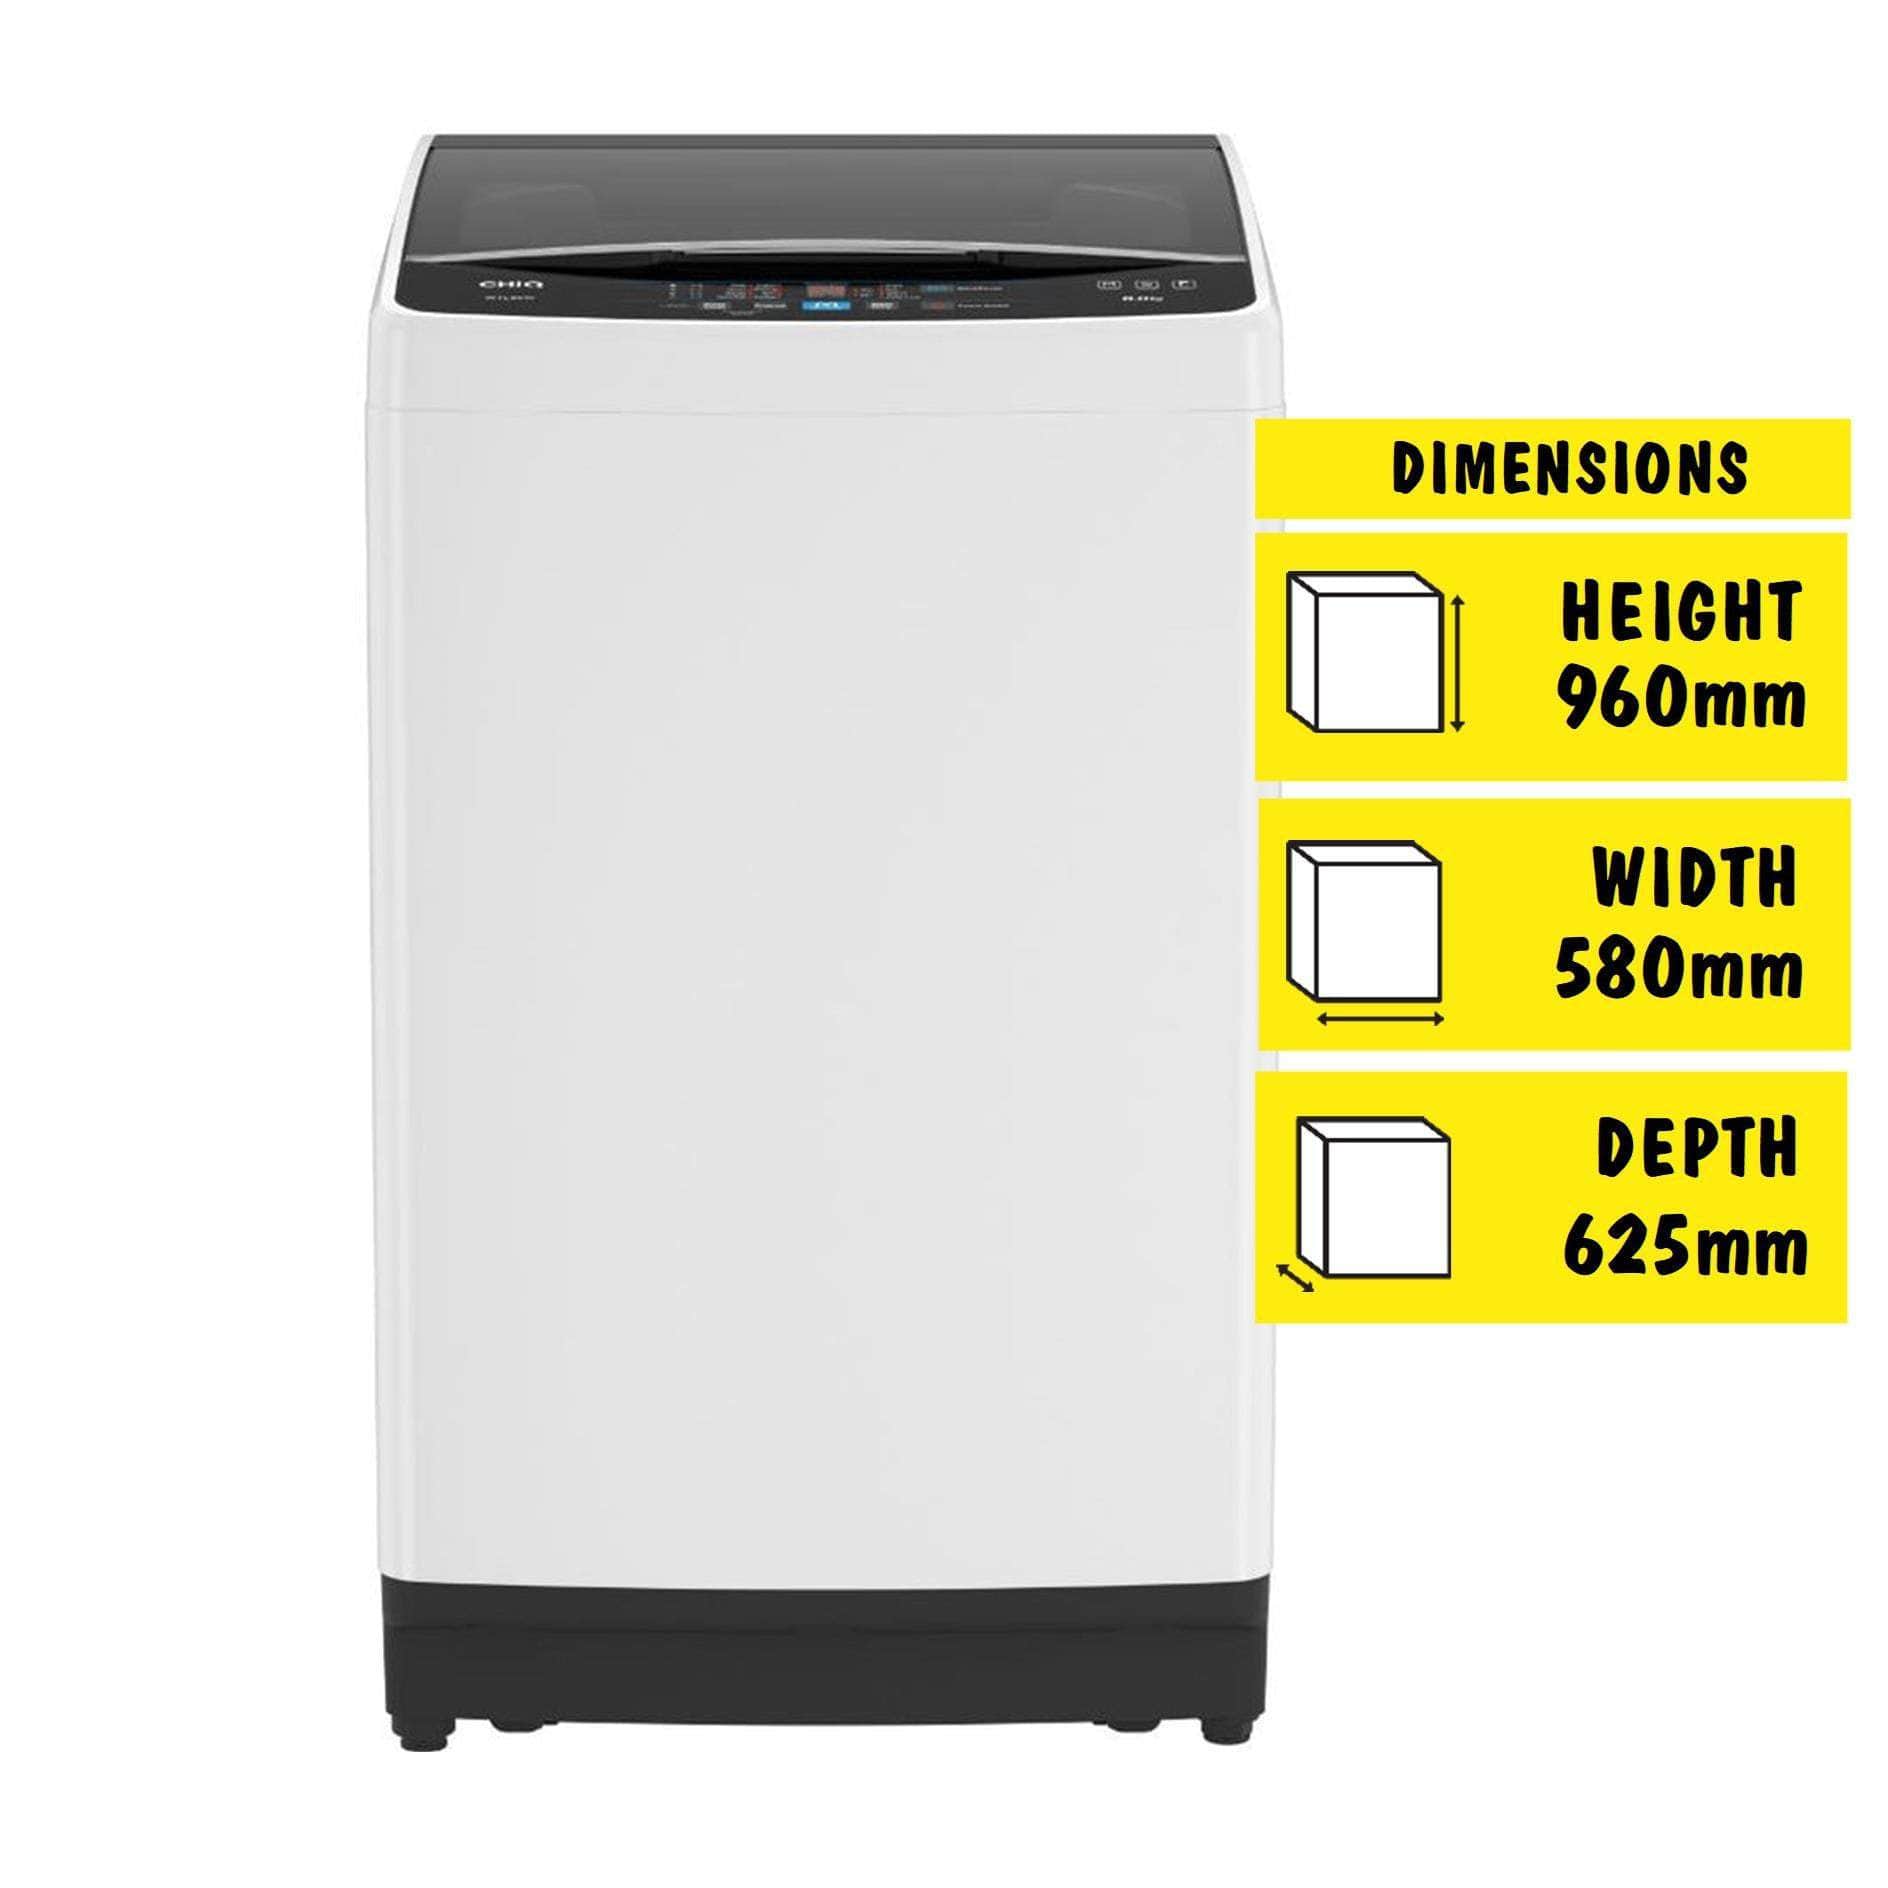 CHiQ 8kg Top Load Washing Machine (White)